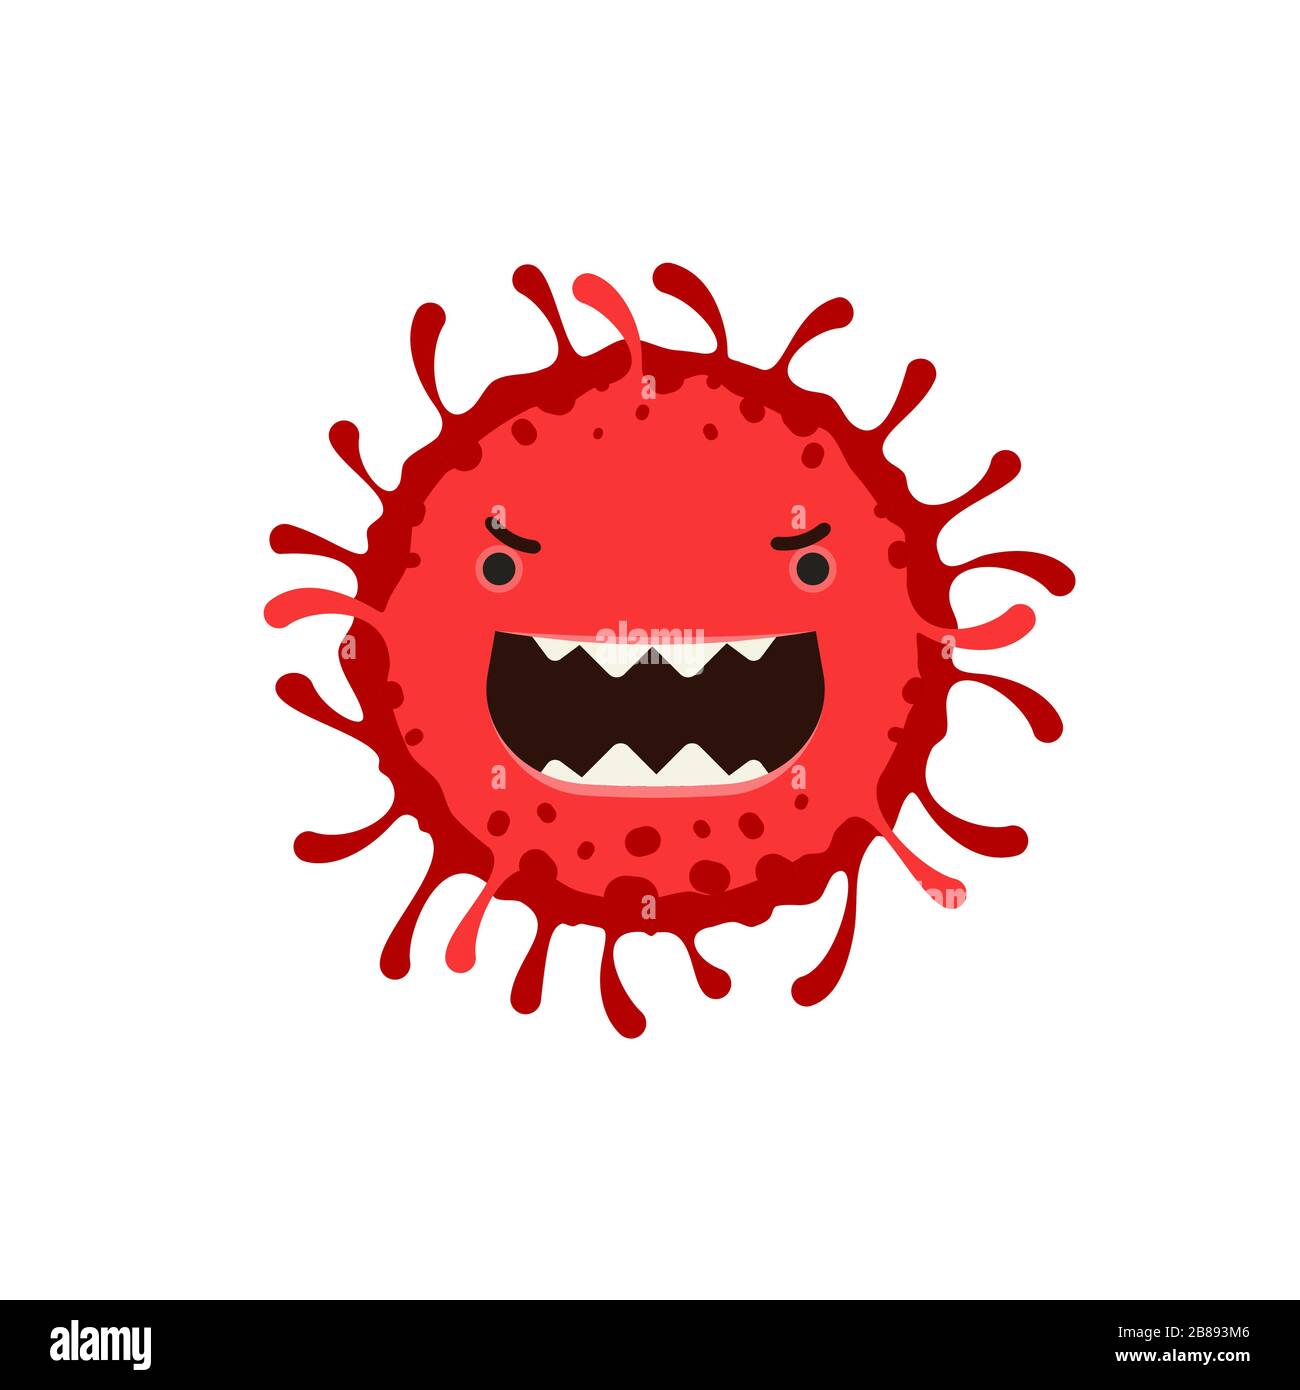 Germe ou virus, bug, infection, illustration du vecteur de toxine Illustration de Vecteur